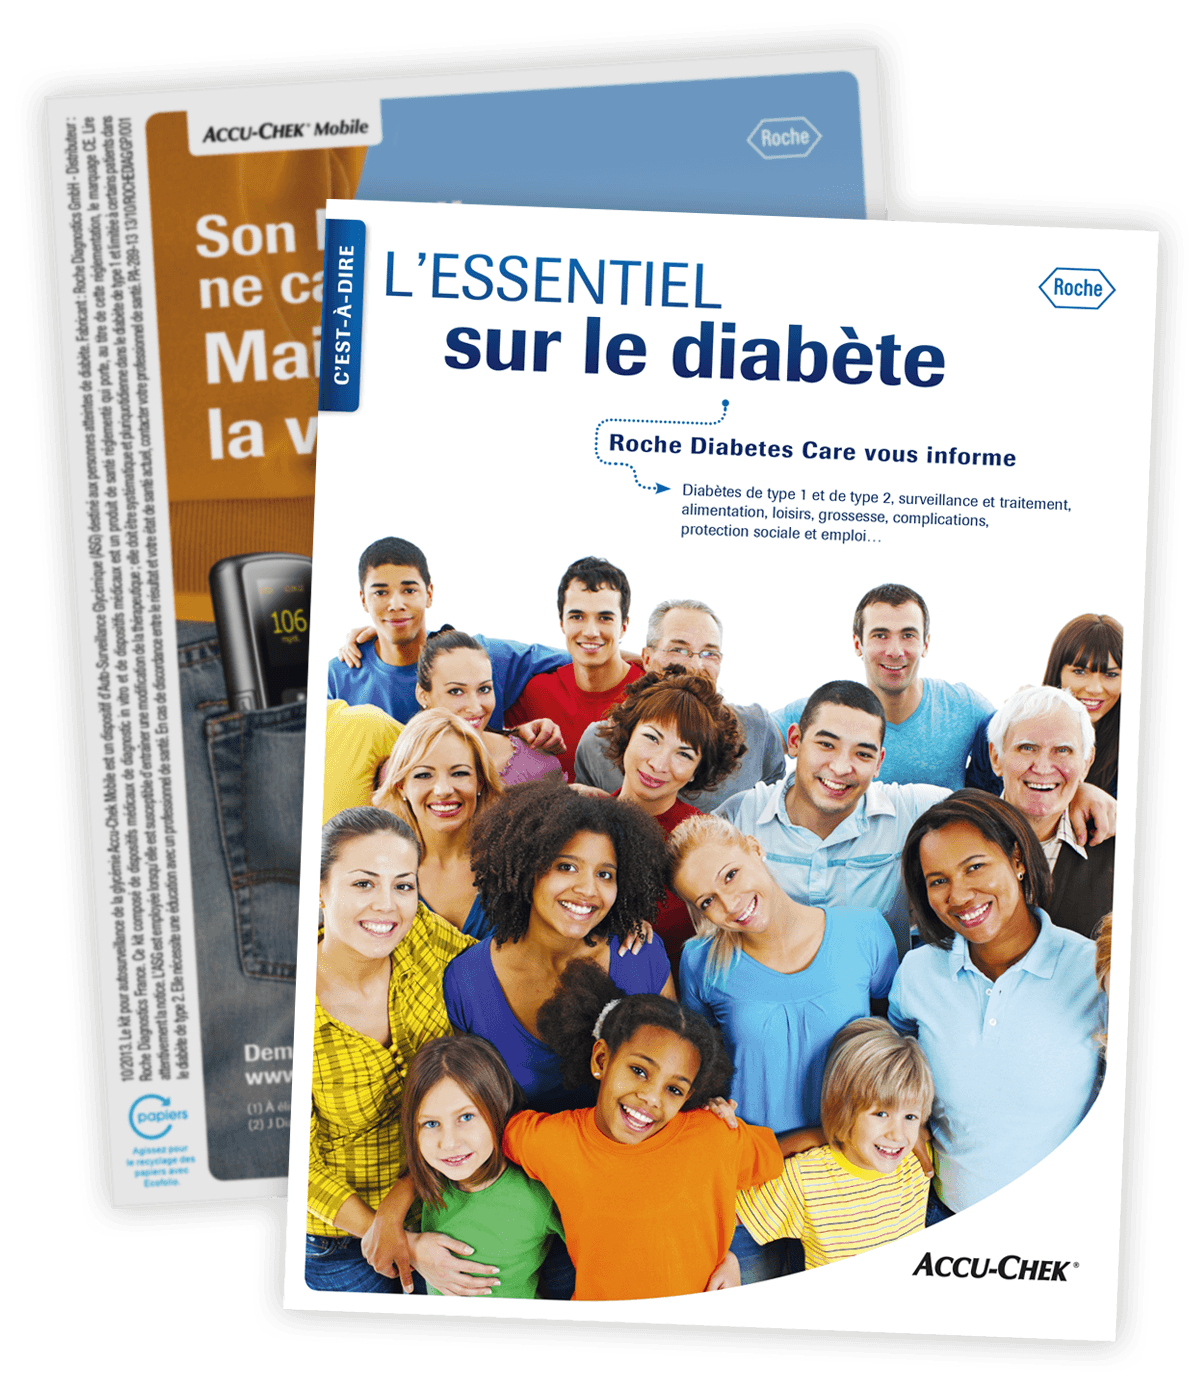 Ouvrage d'information sur le diabète, "L'Essentiel sur le diabète", créé pour Roche Diabetes Care par Caramel & Paprika - Première et dernière pages de couverture (photos © Roche Diabetes Care)